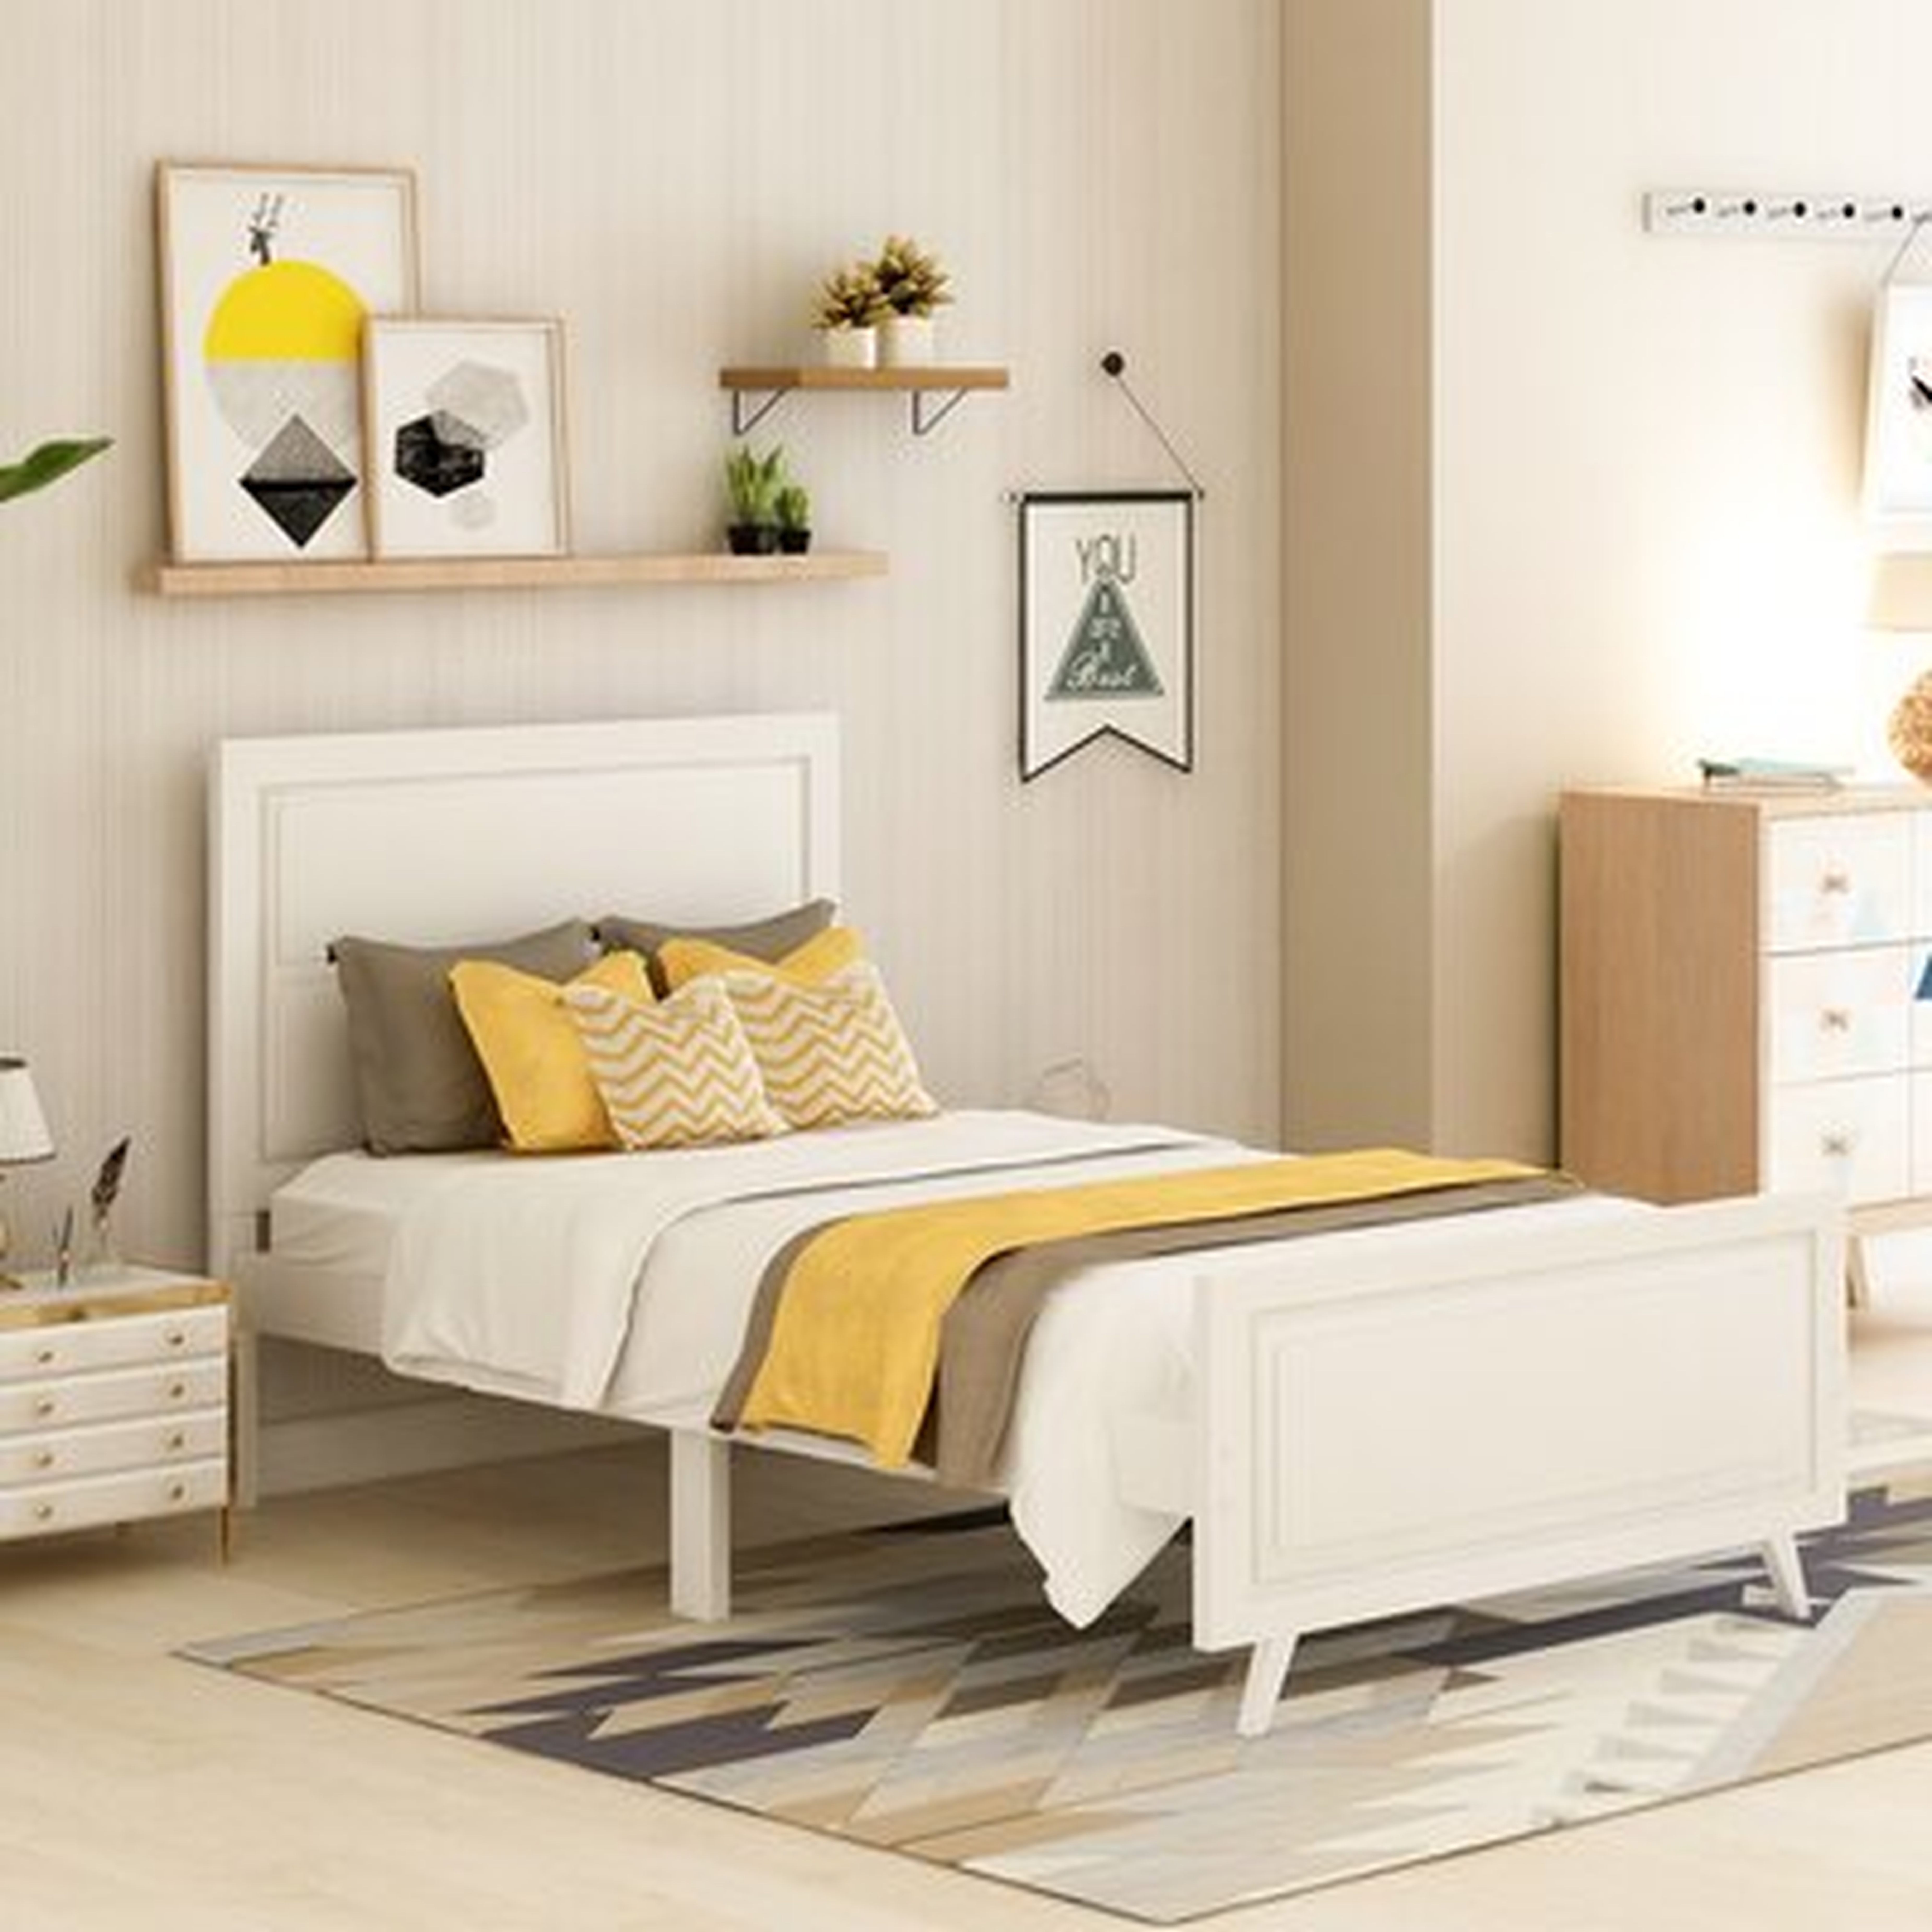 Hamann Solid Wood Twin Bed - Wayfair